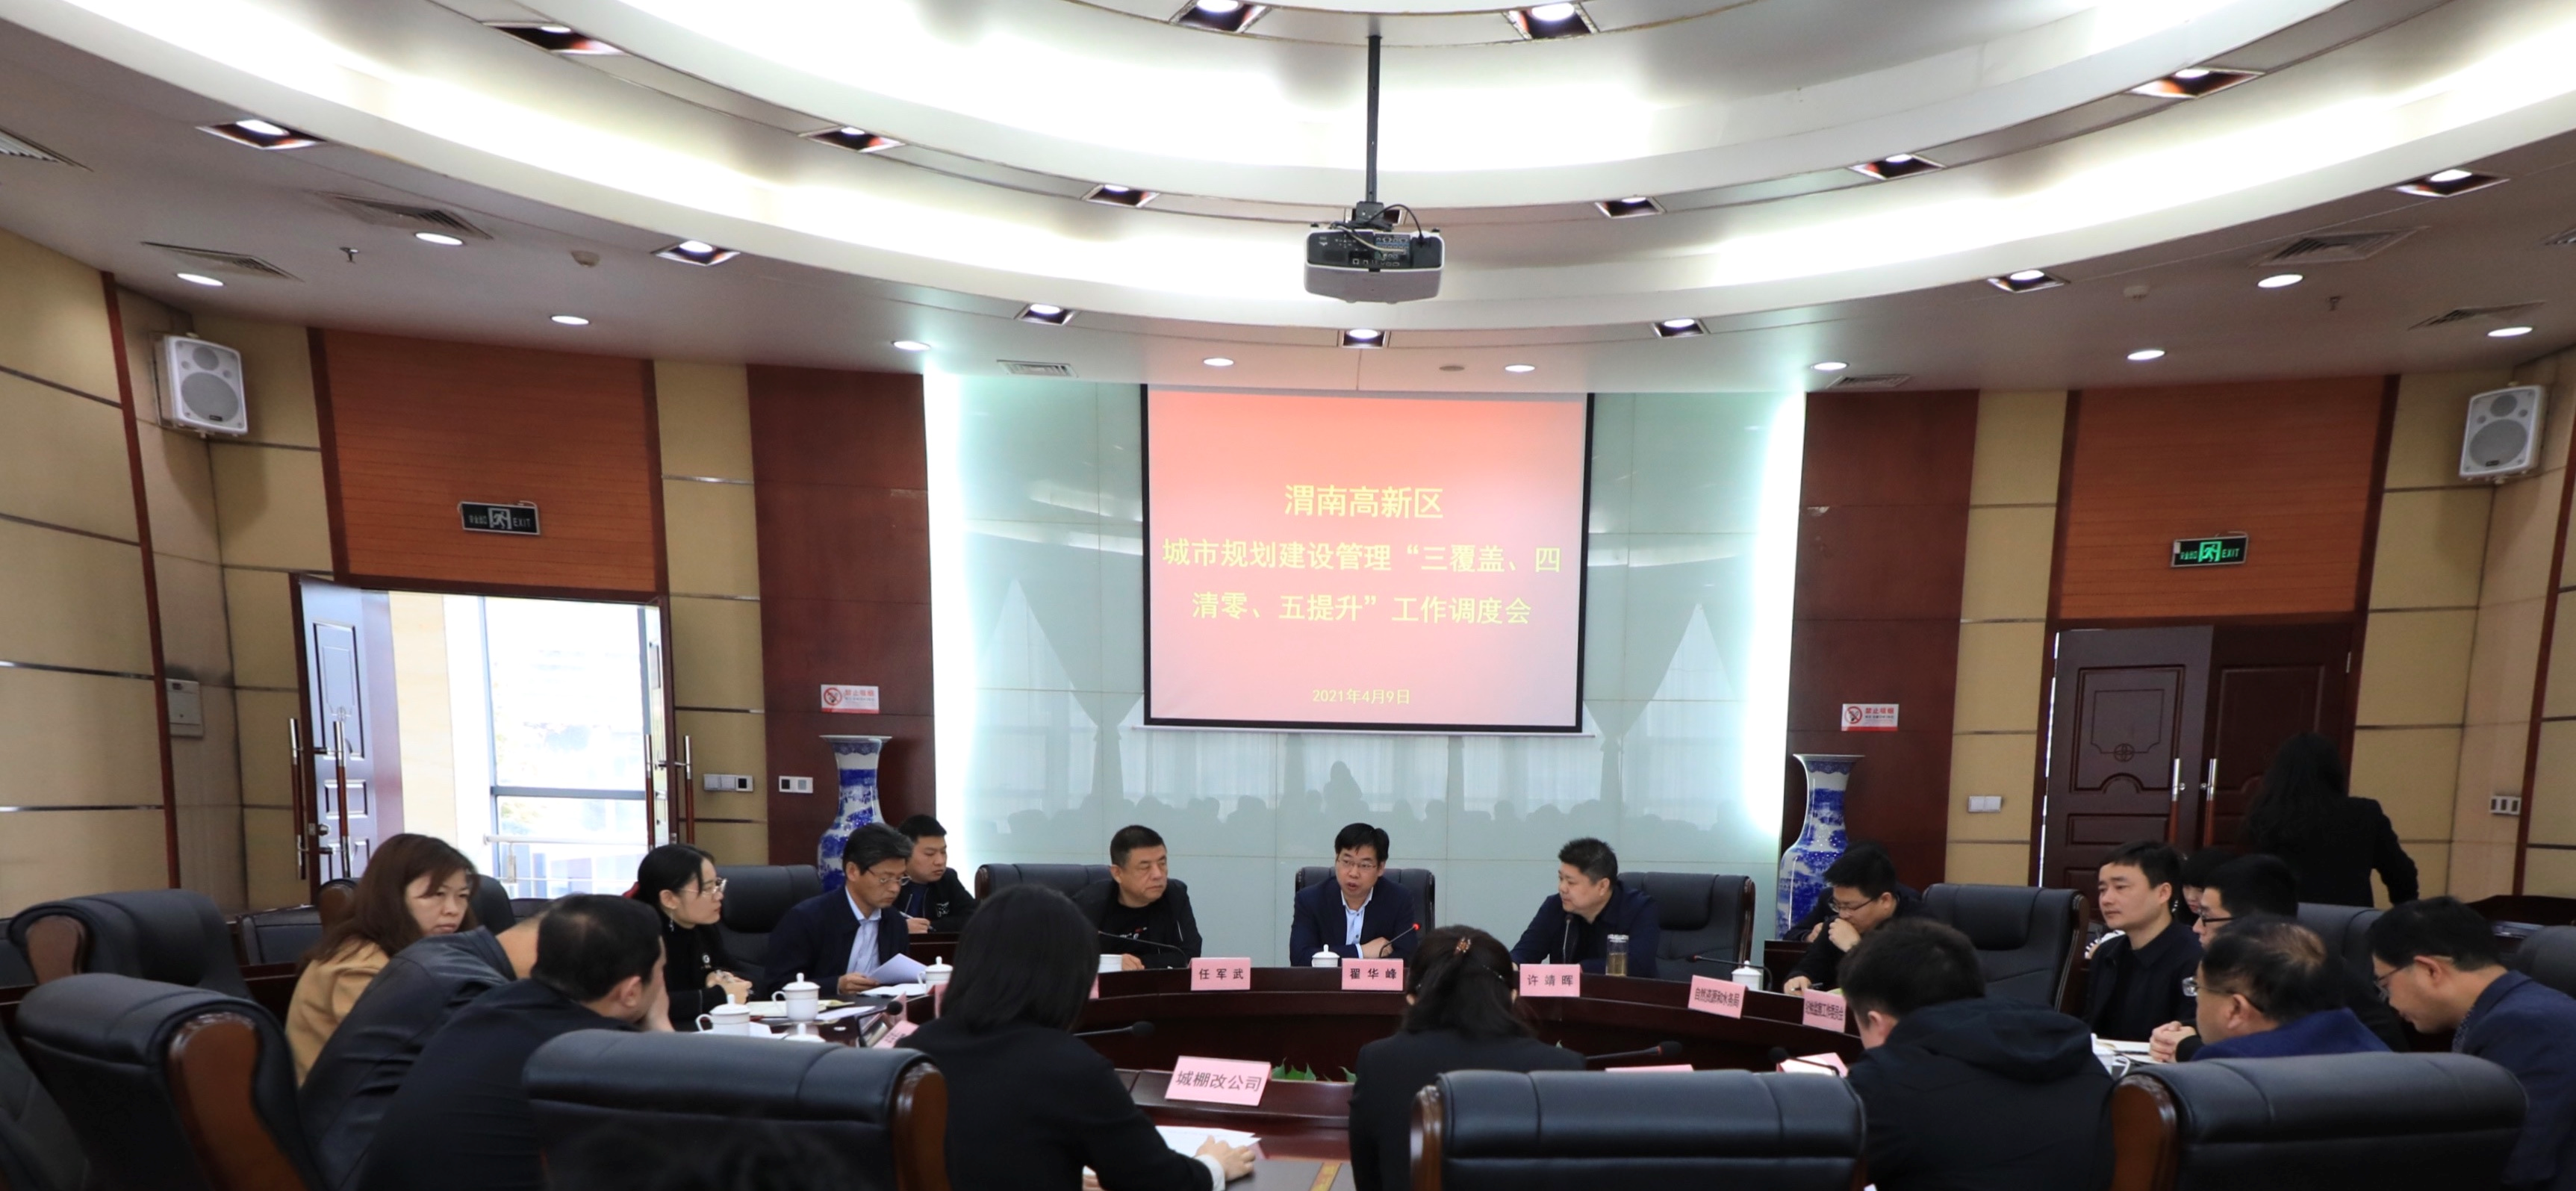 渭南高新区召开城市规划建设管理“三覆盖、四清零、五提升”工作调度会